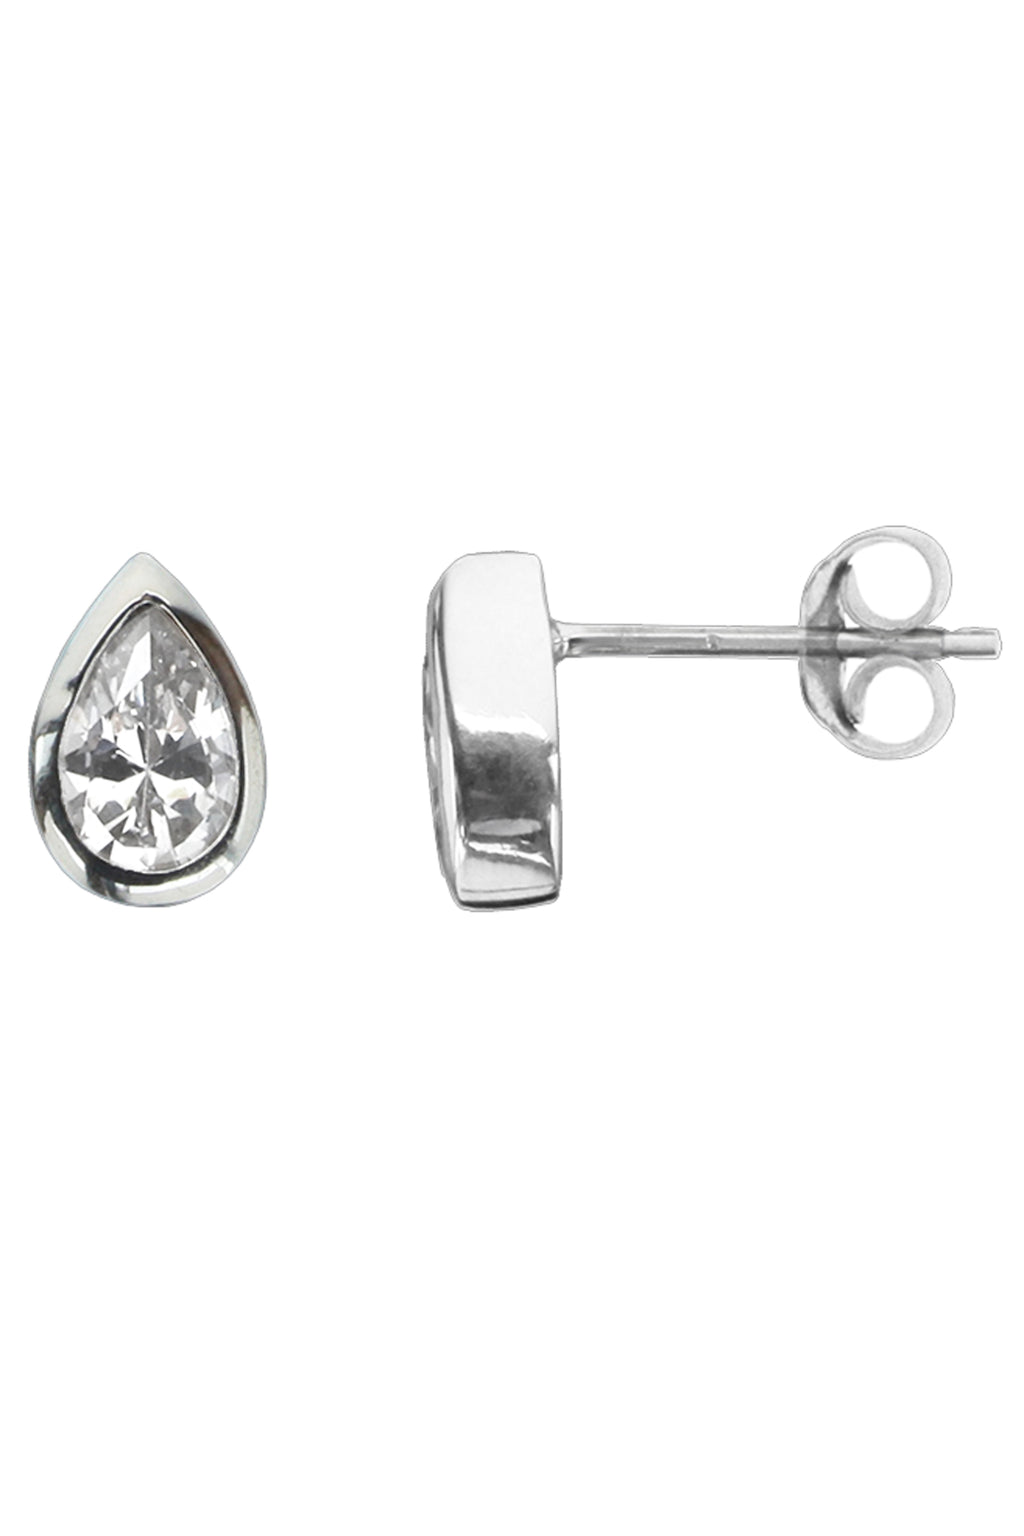 Silver Teardrop CZ Stud Earrings